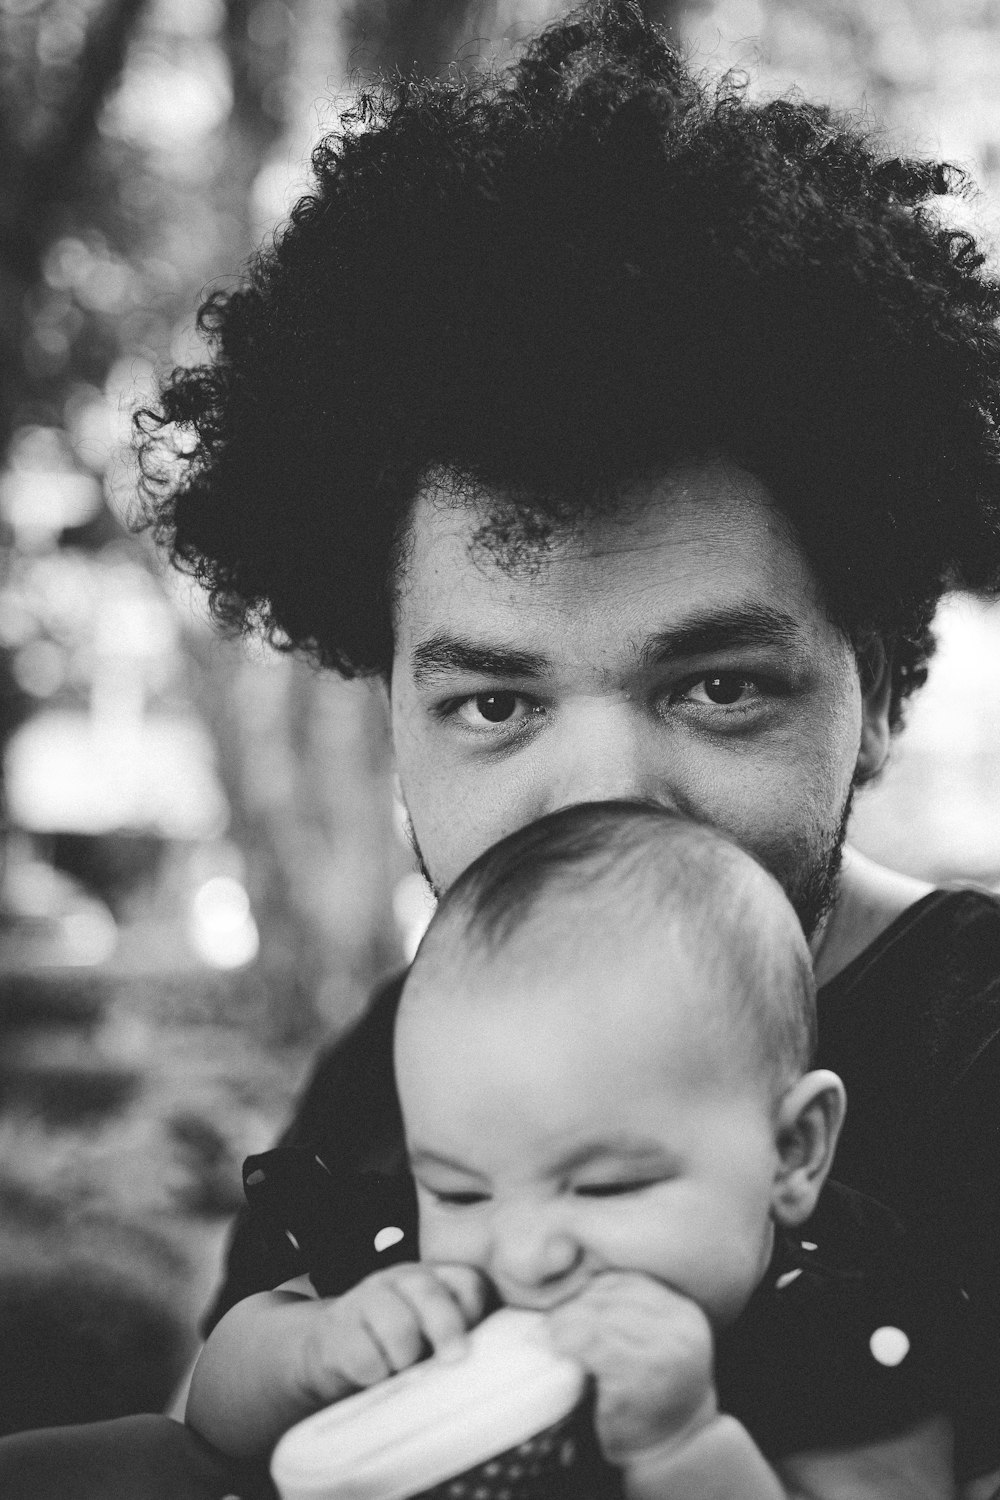 아기를 안고 있는 남자의 그레이스케일 사진